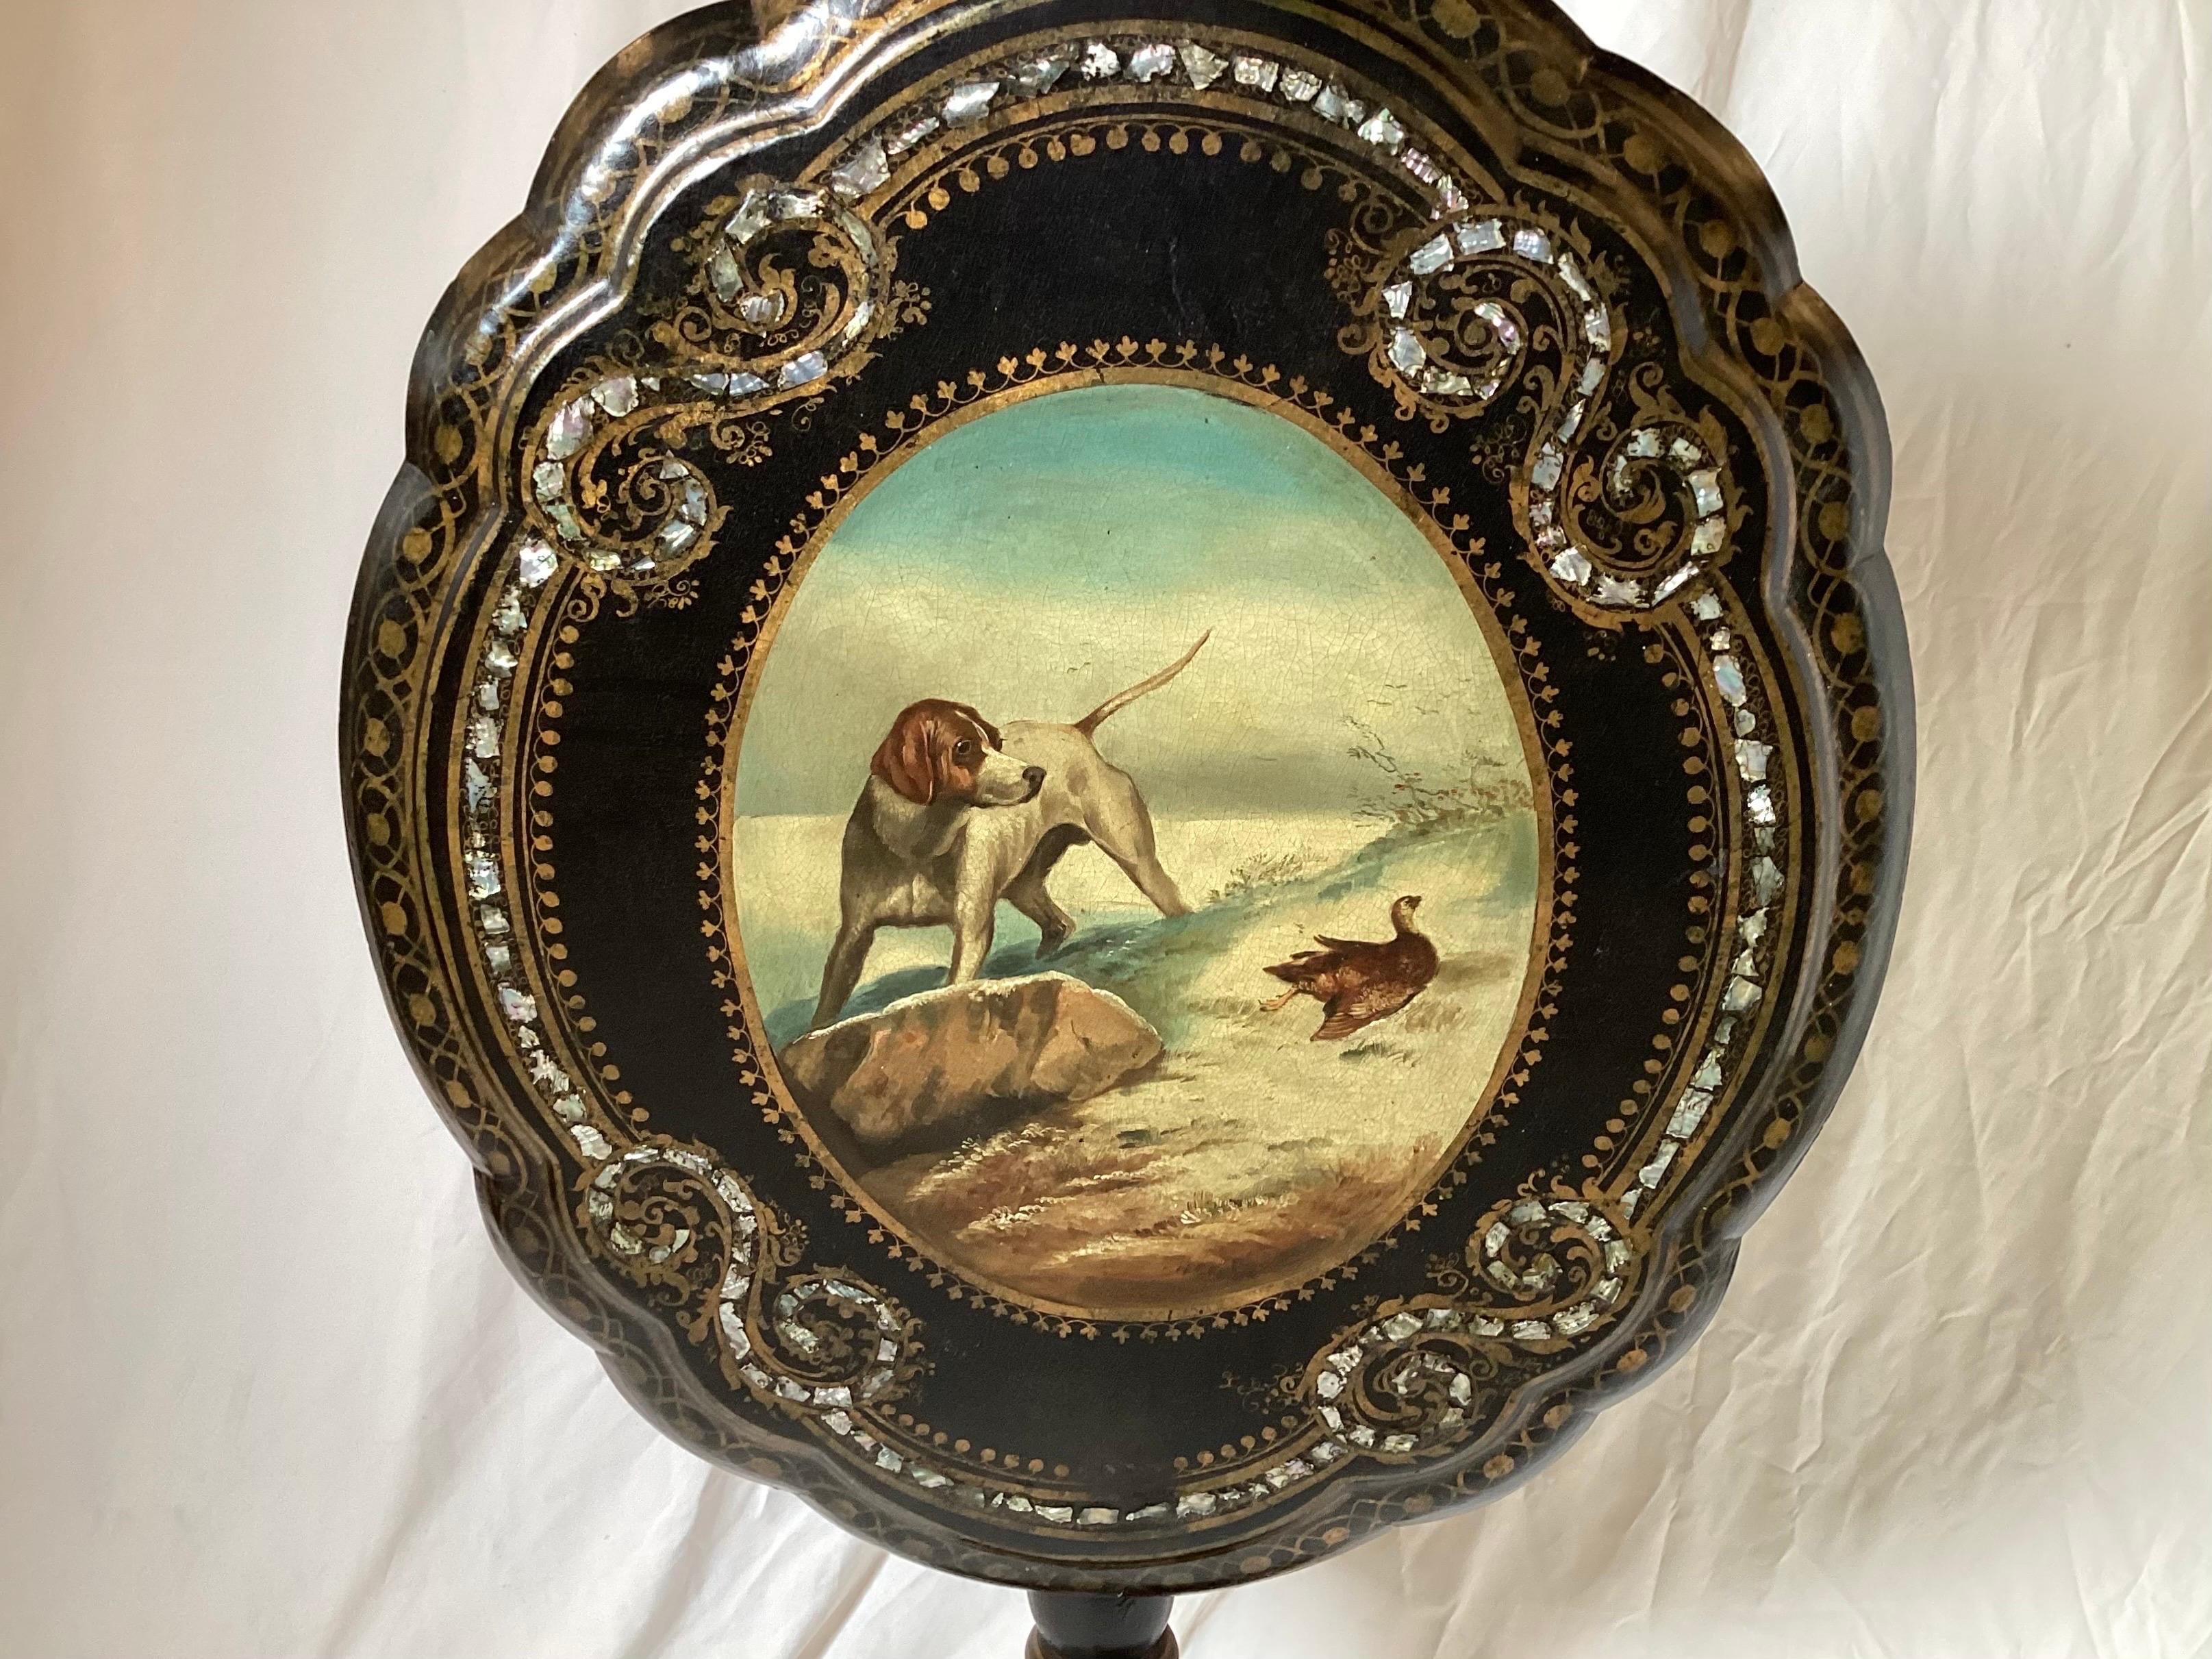 Englischer Teetisch mit Muschelintarsien, vergoldetem, bemaltem und ebonisiertem Pappmaché, Mitte des 19. Jahrhunderts, mit einer Szene in der Mitte, die einen englischen Vorstehhund bei der Jagd auf ein Moorhuhn zeigt.

Abmessungen: Höhe 23, Breite